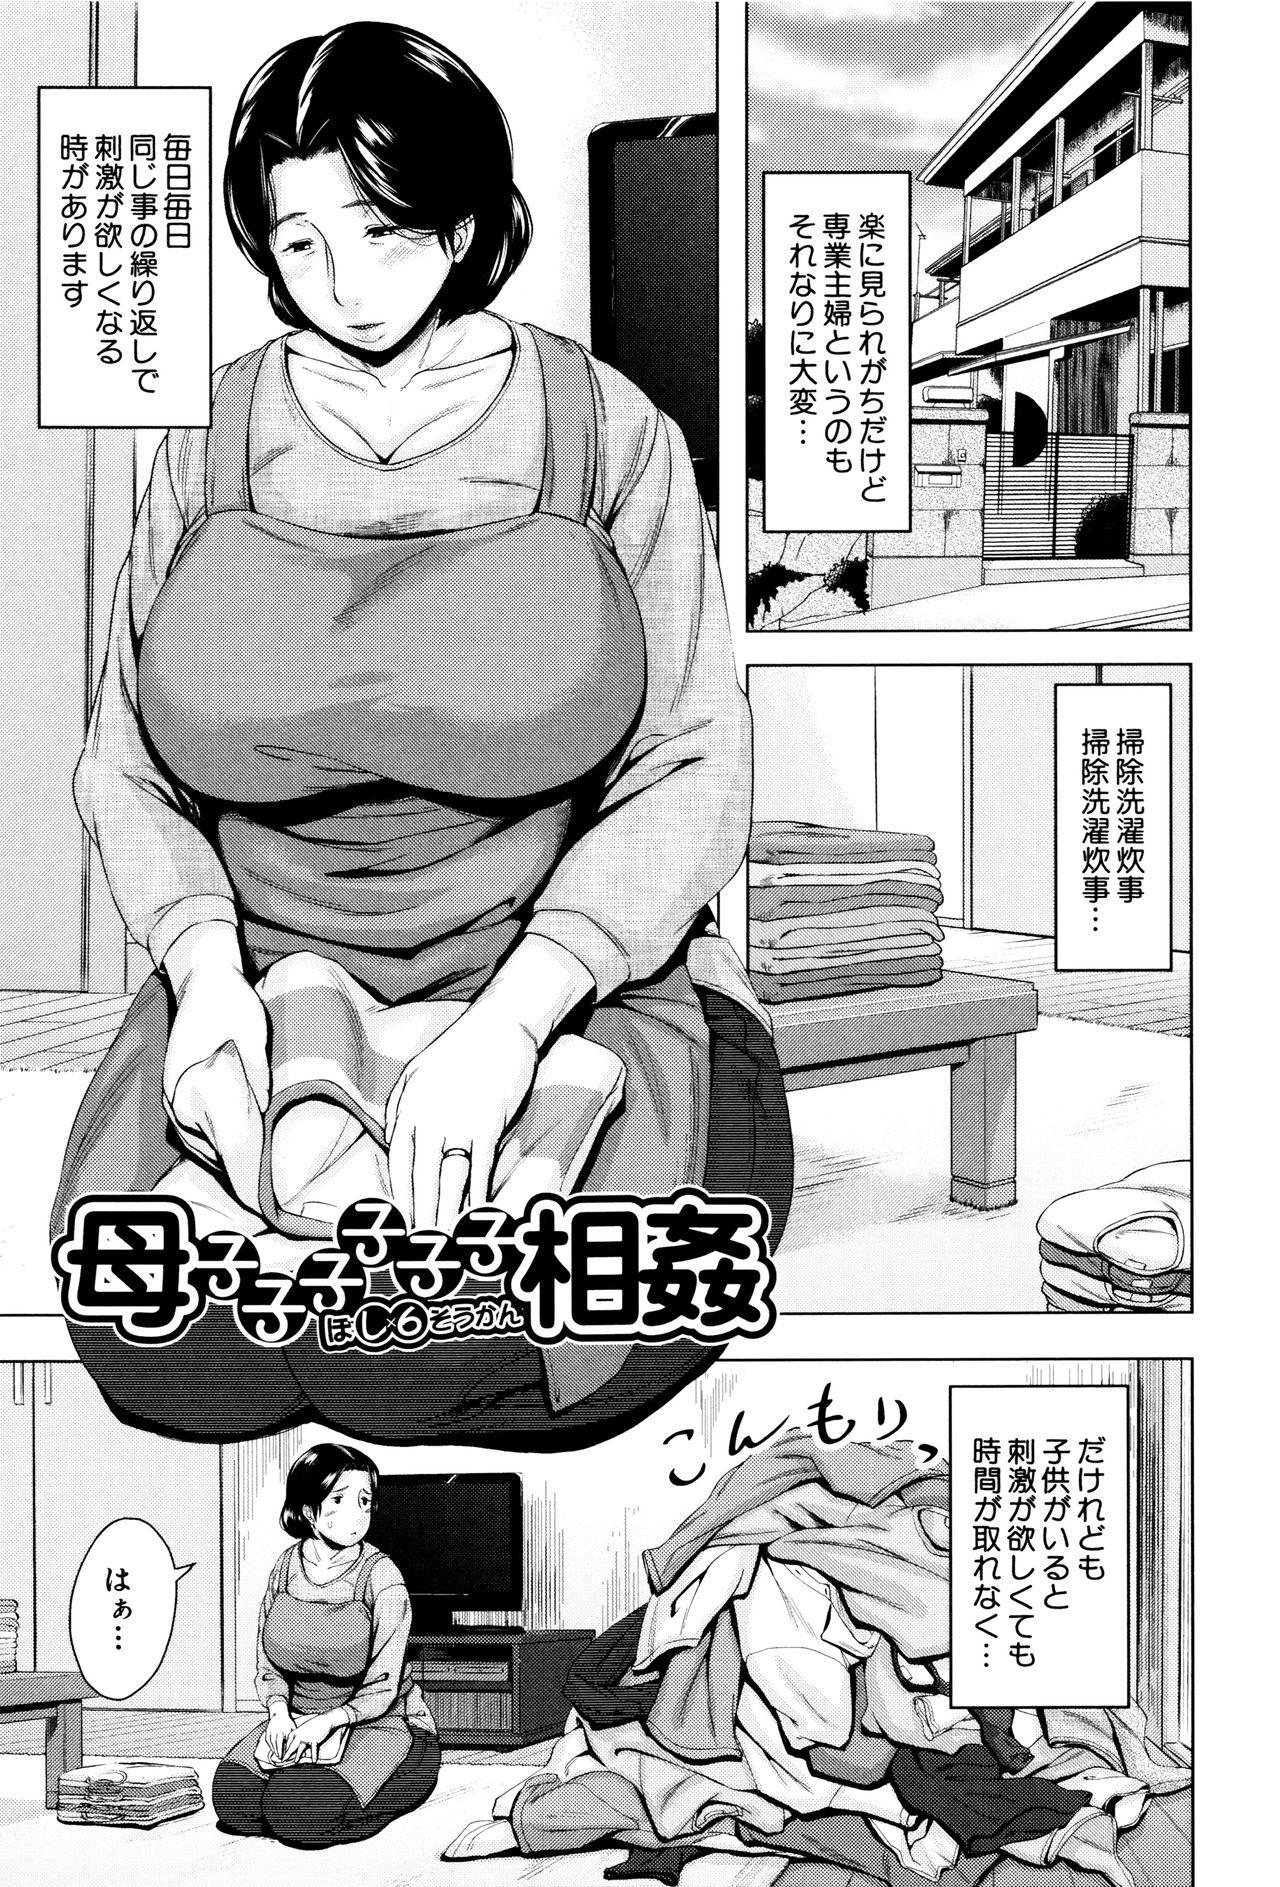 [Jitsuma] Kinyoubi no Haha-tachi e - To Friday's mothers 67